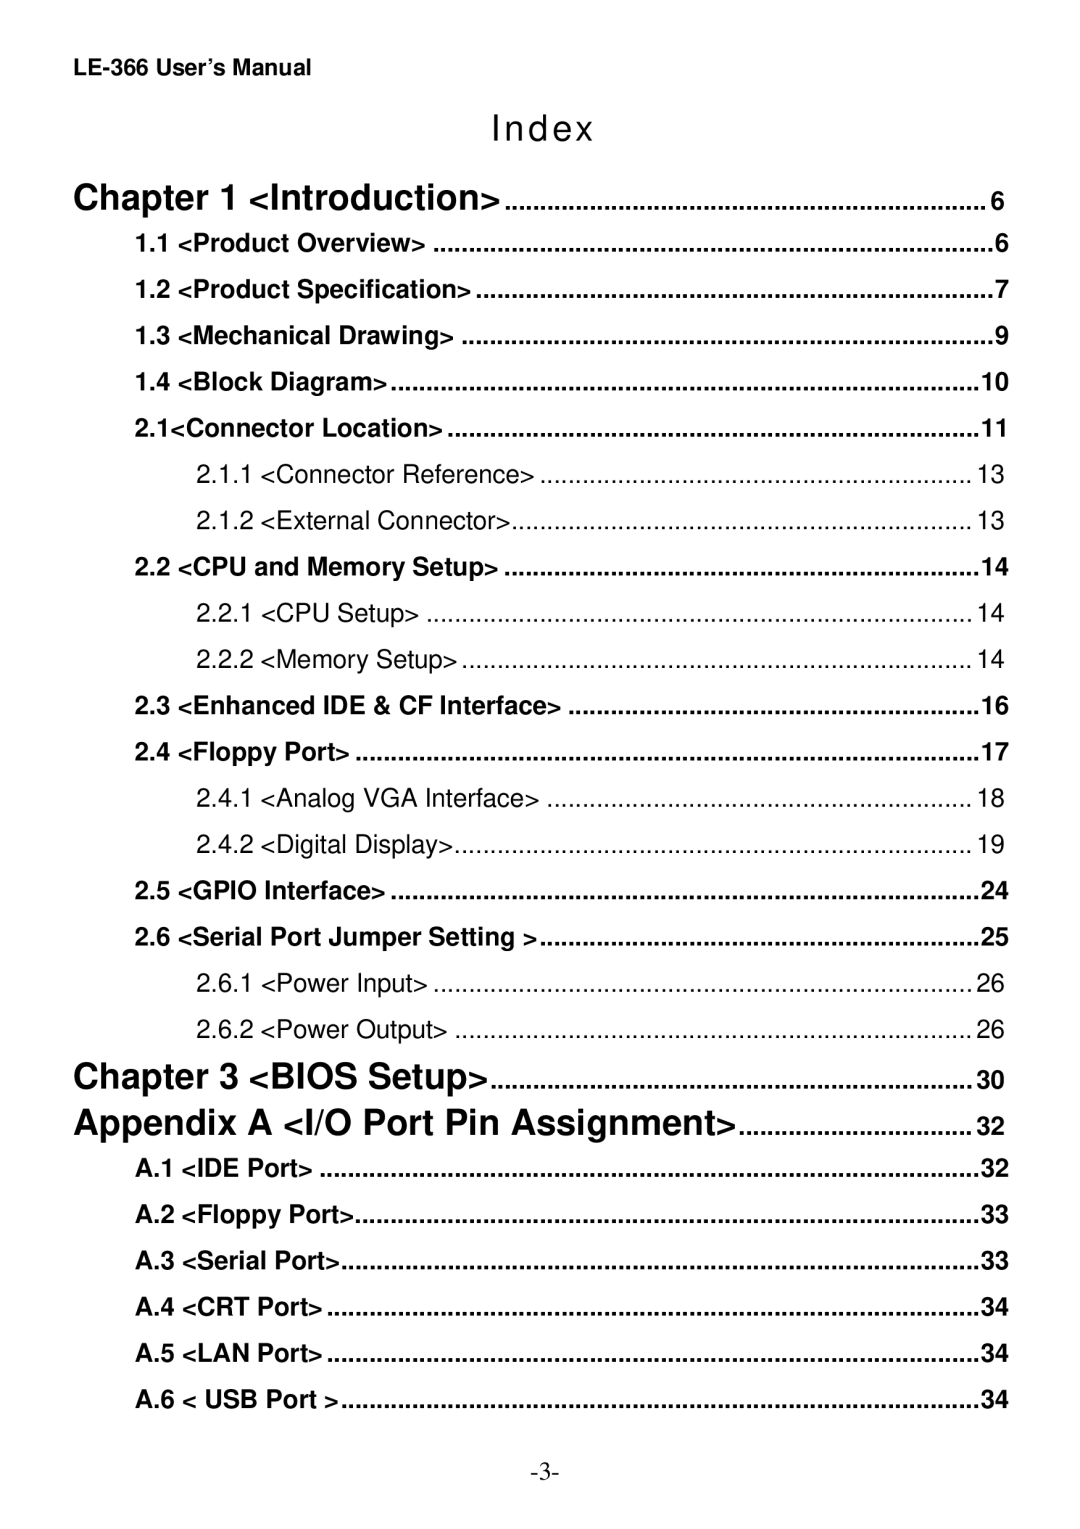 AMD LE-366 user manual Index, Appendix a I/O Port Pin Assignment 